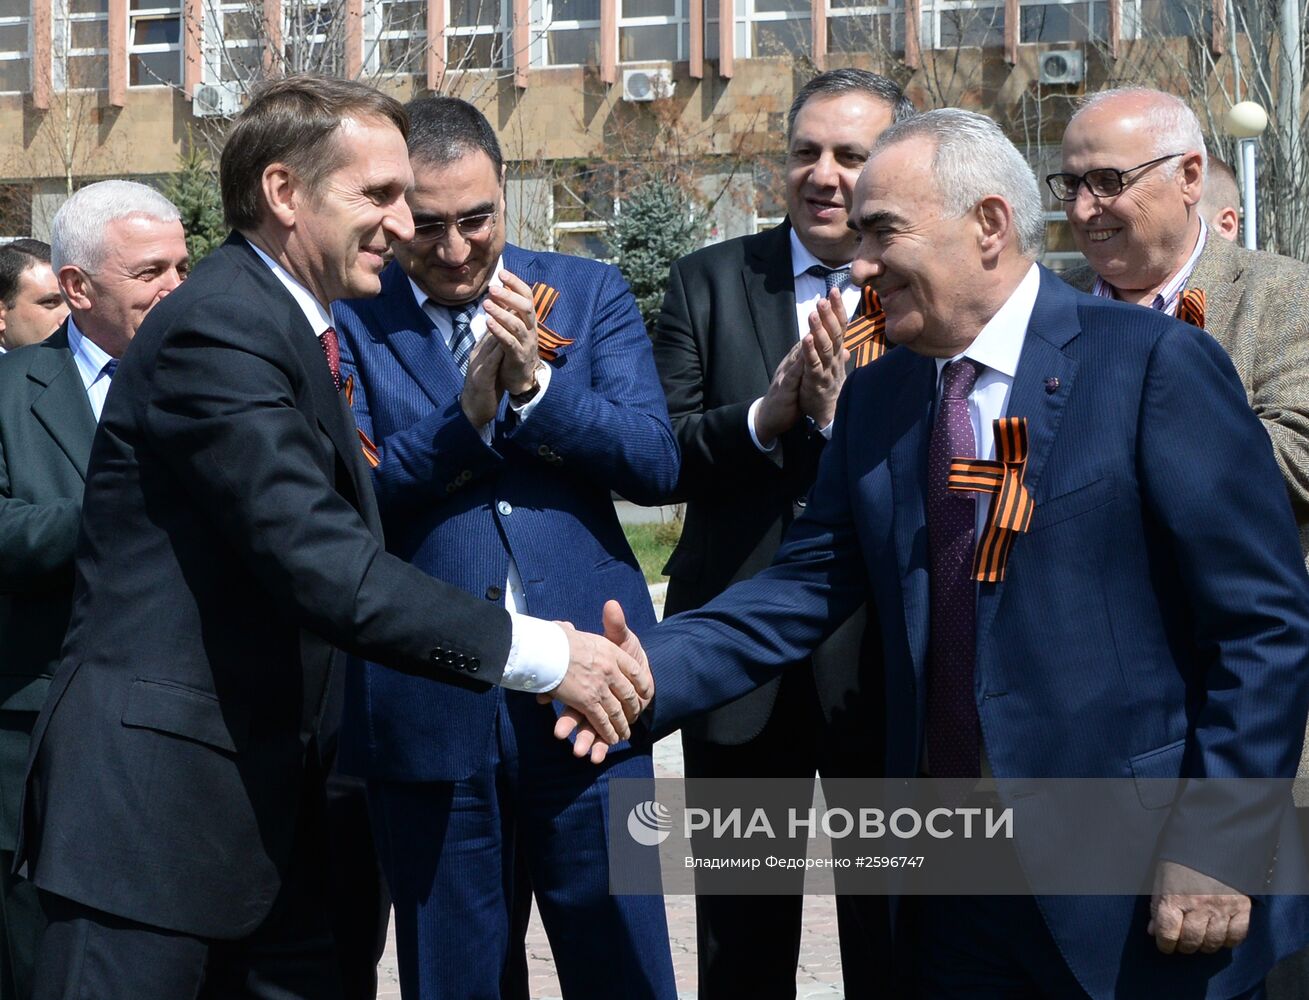 Рабочая поездка председателя Госдумы РФ С.Нарышкина в Армению